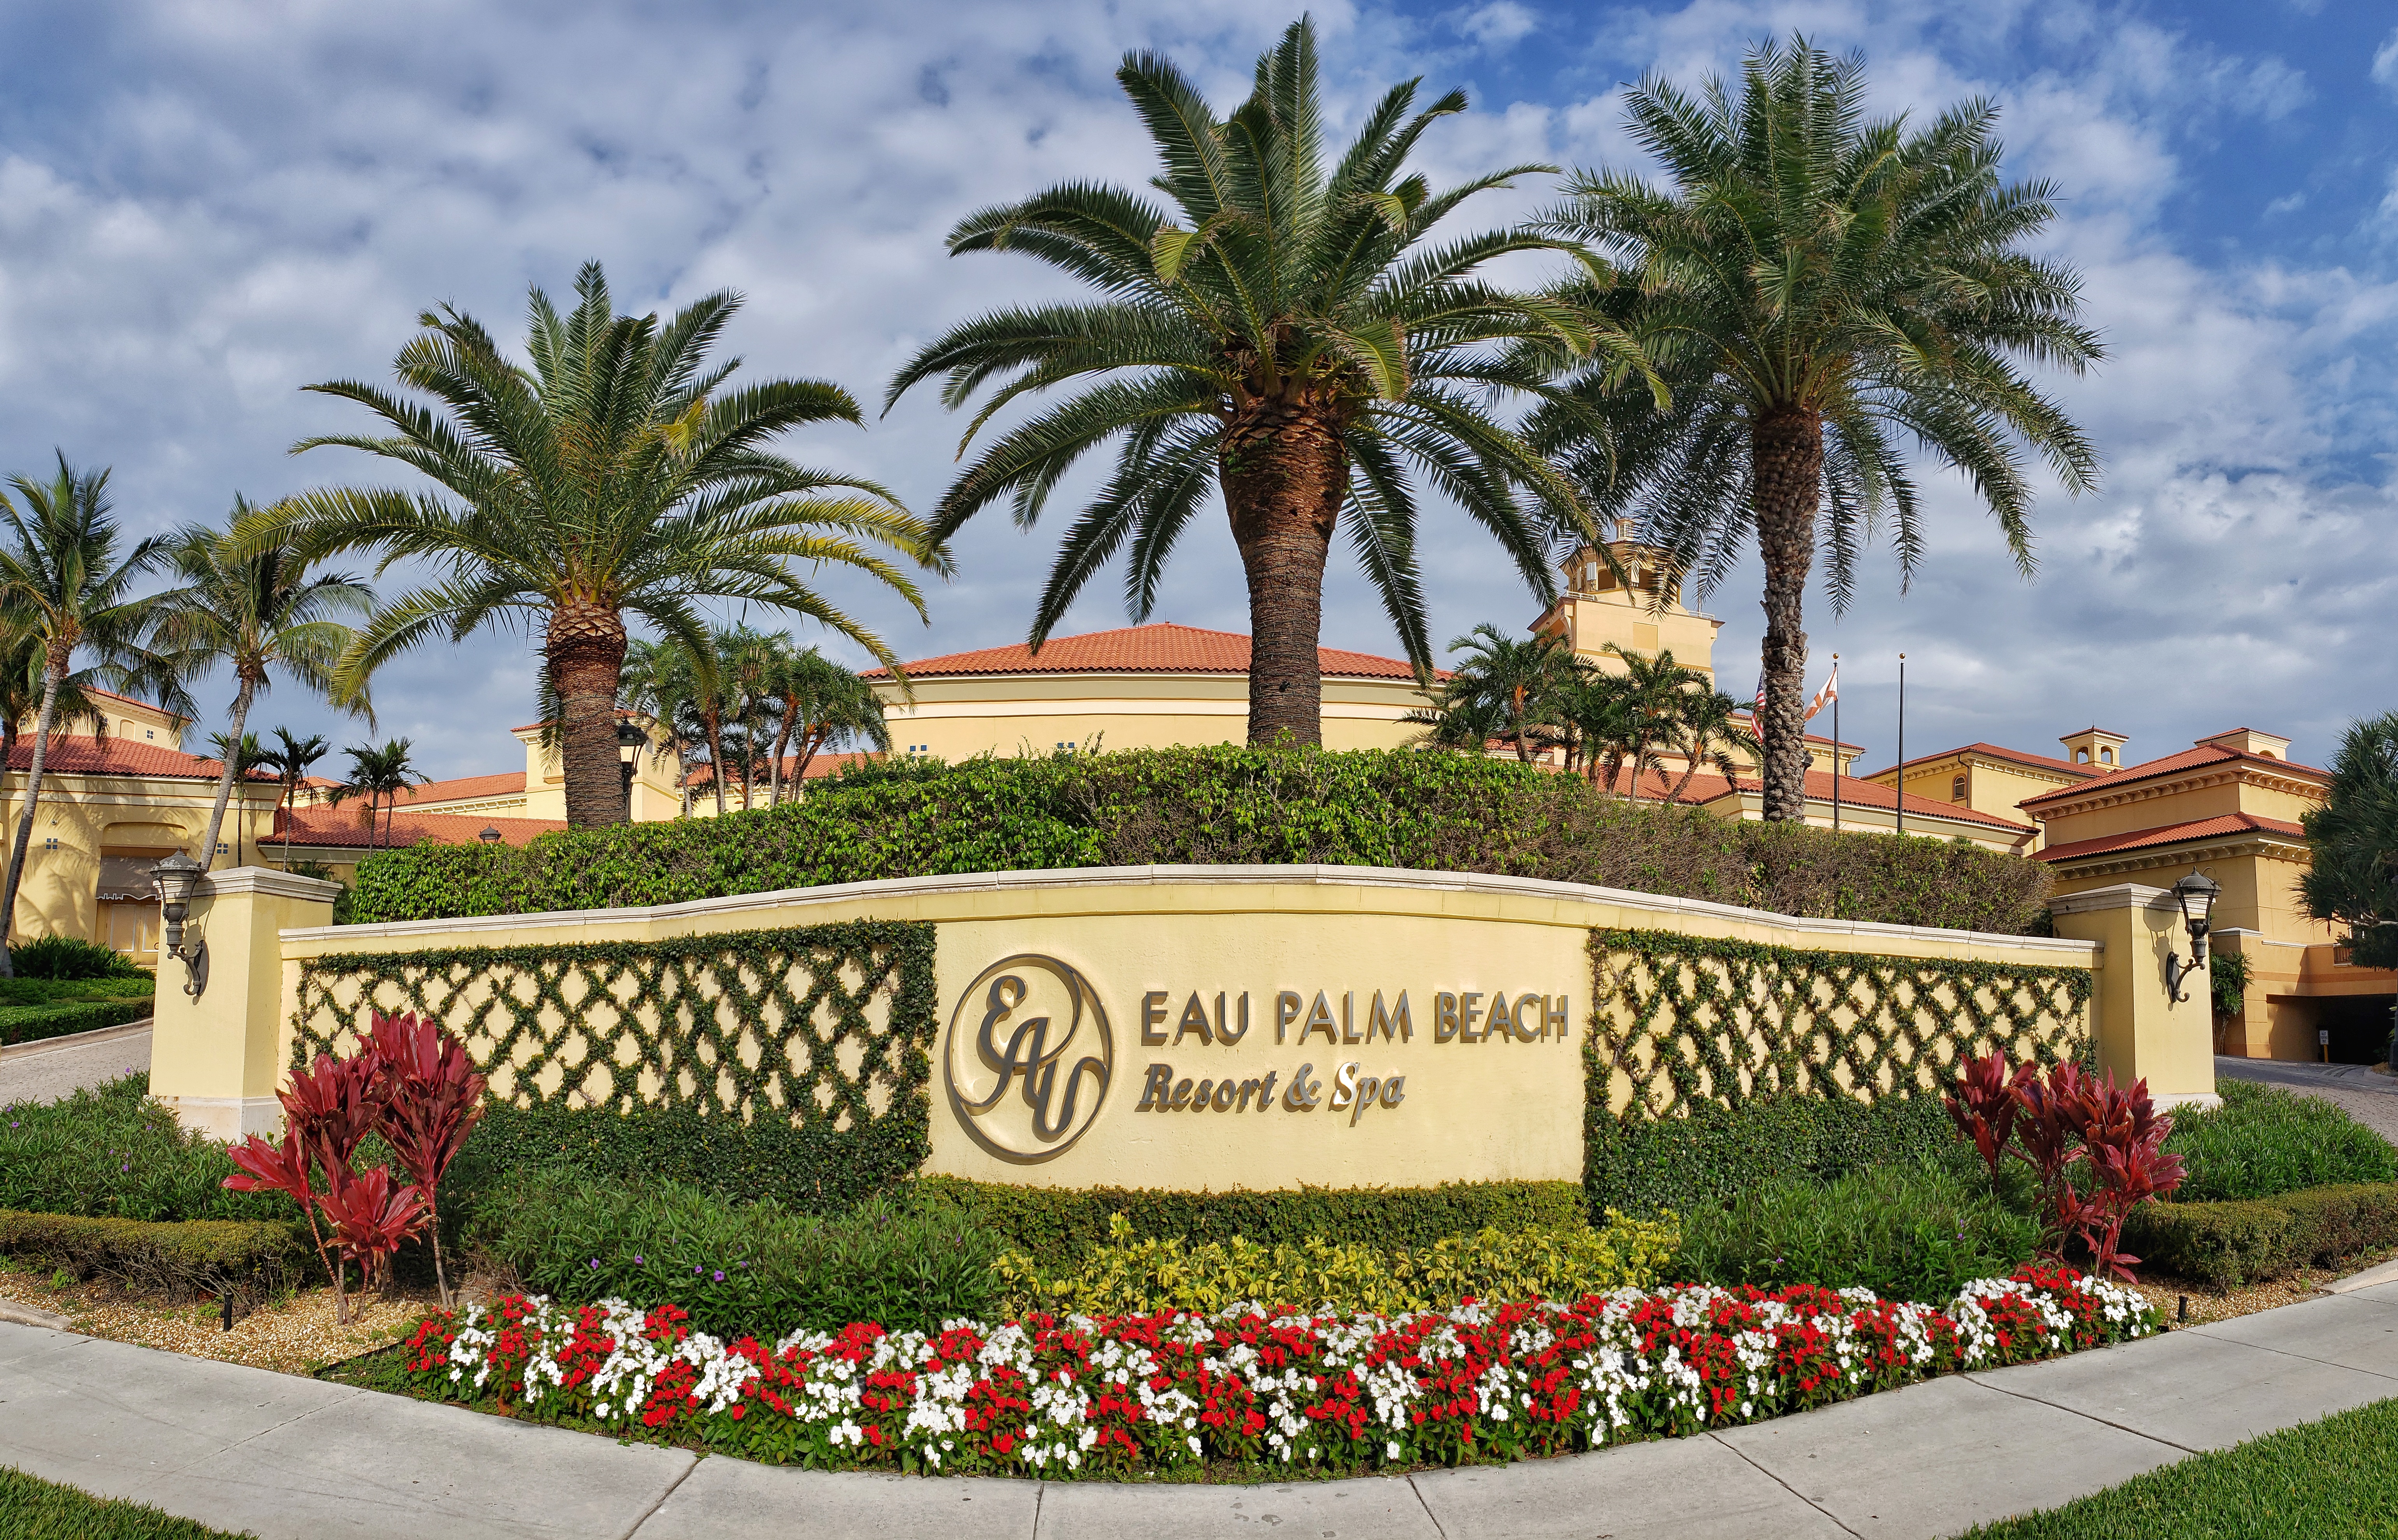 Eau Palm Beach Resort & Spa.